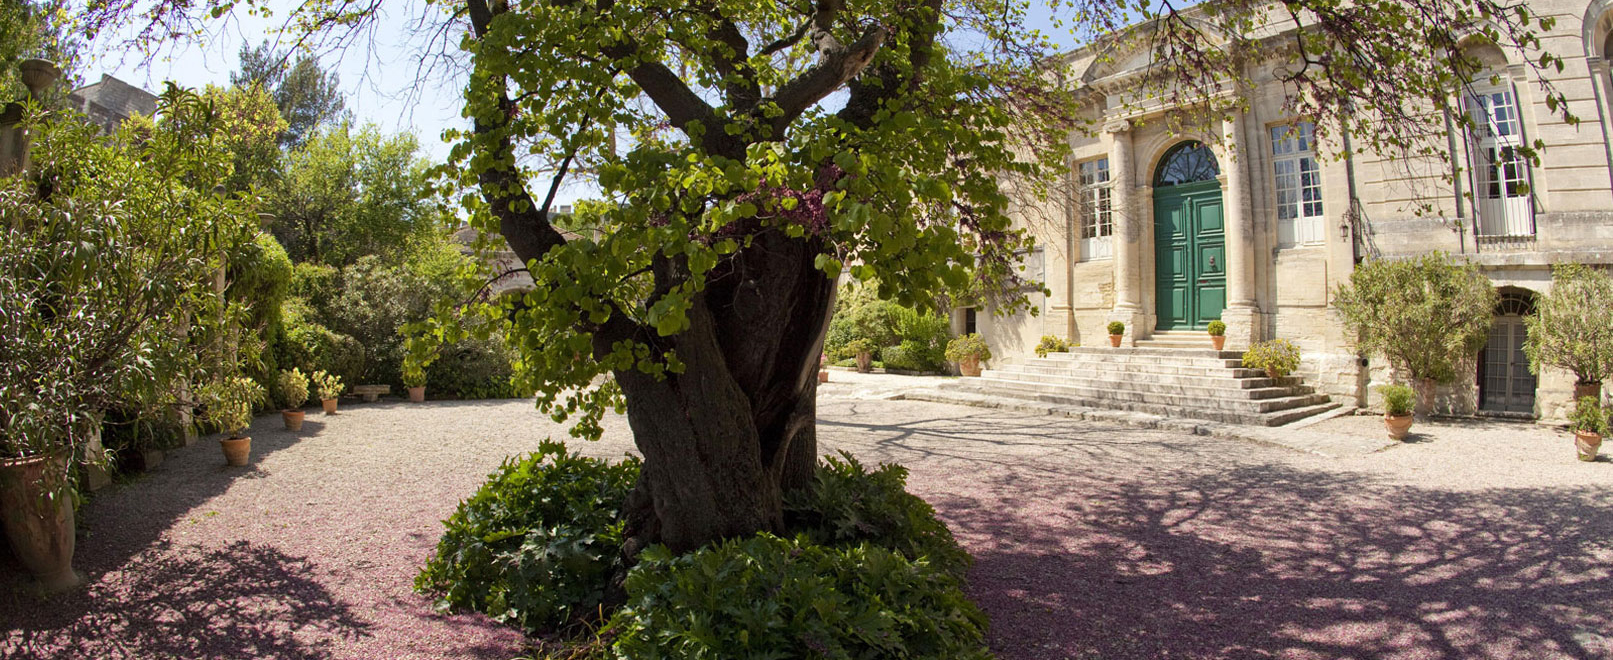 Zen en beschouwing in de tuinen van de abdij © Maynard